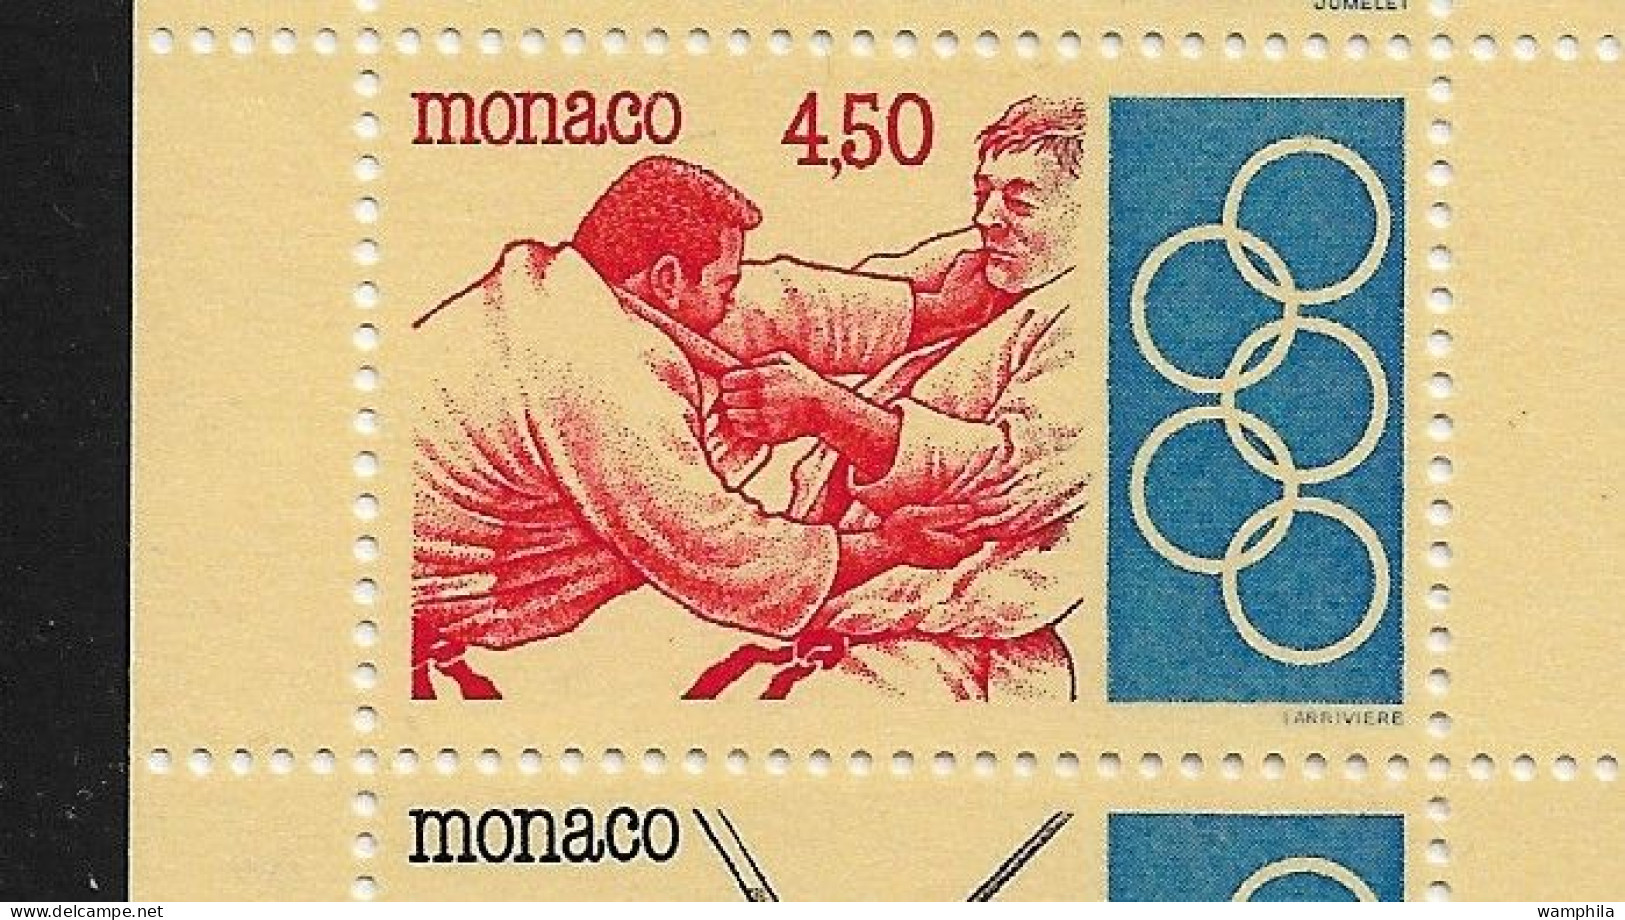 Monaco 1993. Carnet N°11, J.O .Anneaux, Judo, Escrime, Haies, Tir à L'arc, Haltérophilie. - Neufs